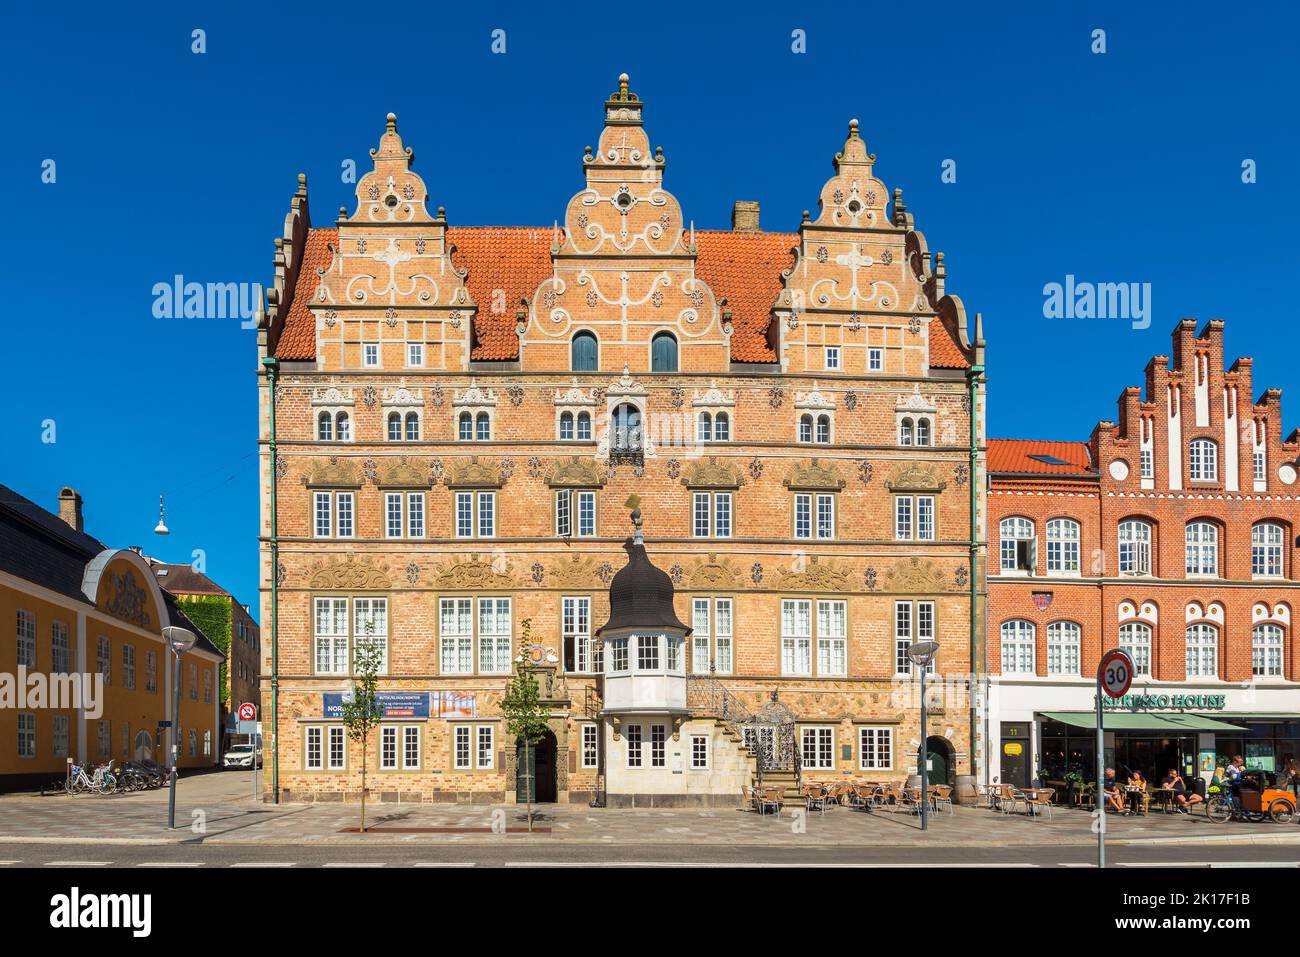 Jens Bang's House ist ein Wahrzeichen in Aalborg, Dänemark. Es wurde 1624 von Jens Bang im holländischen Renaissance-Stil erbaut. Stockfoto